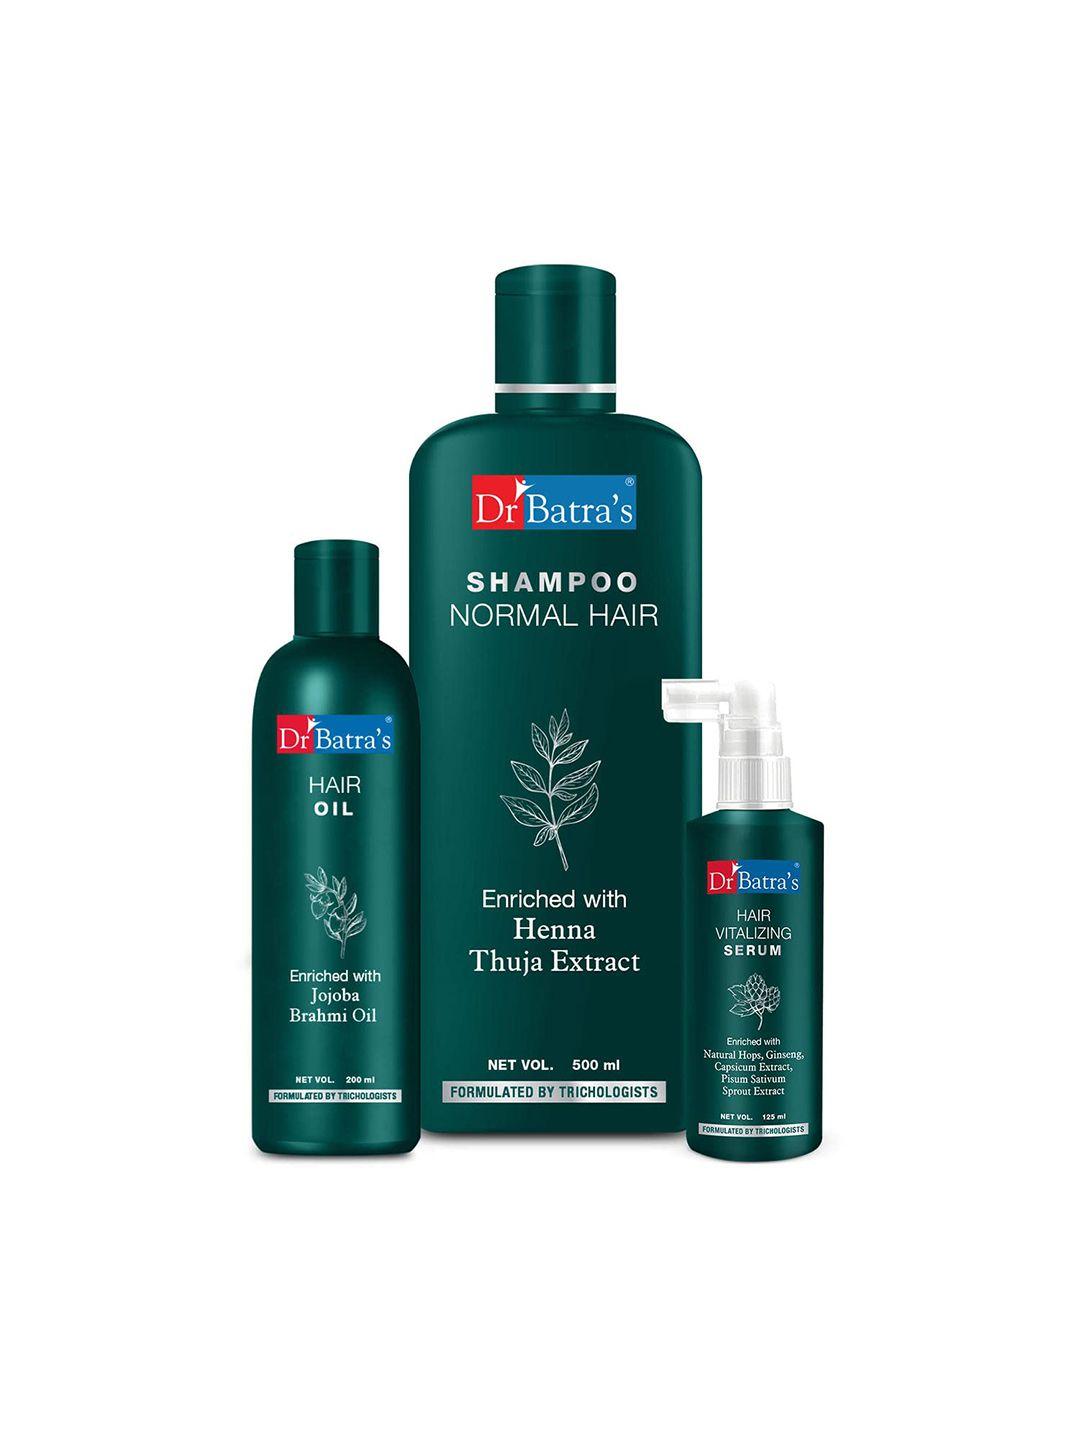 dr. batras hair vitalizing serum 125ml + normal hair shampoo 500ml + hair oil 200ml